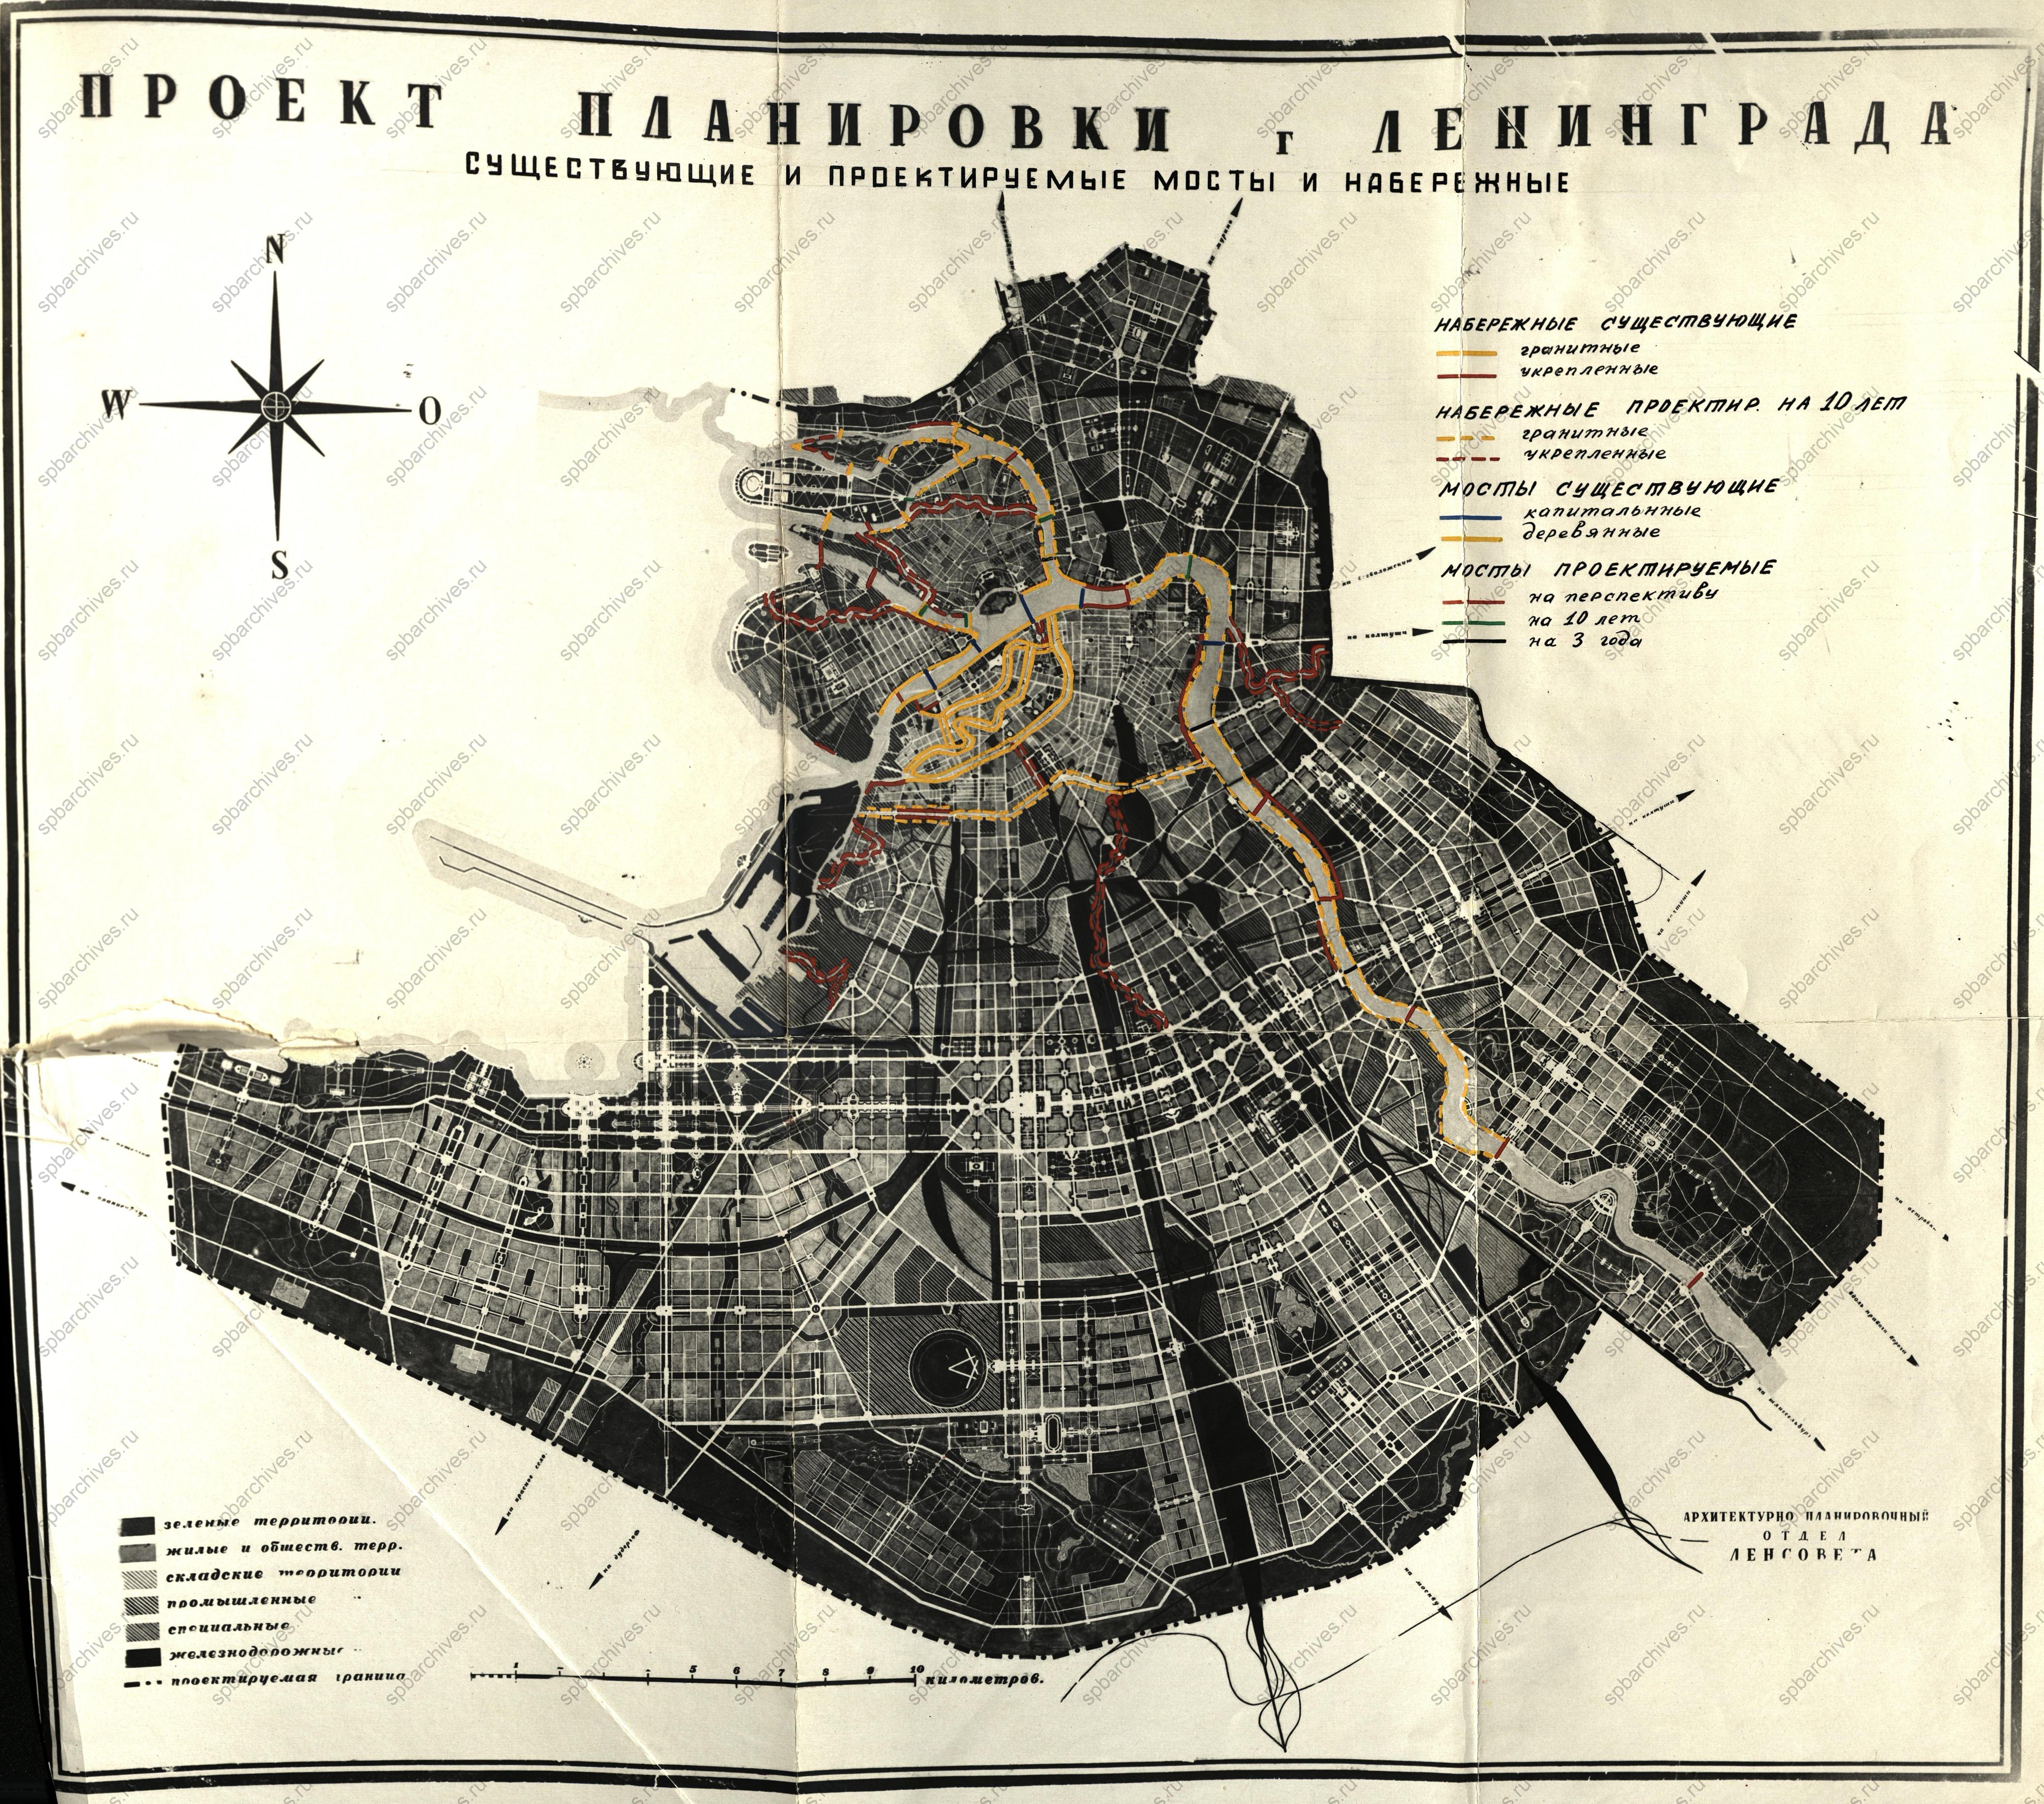 Проект планировки Ленинграда с указанием существующих и проектируемых мостов и набережных. 1935